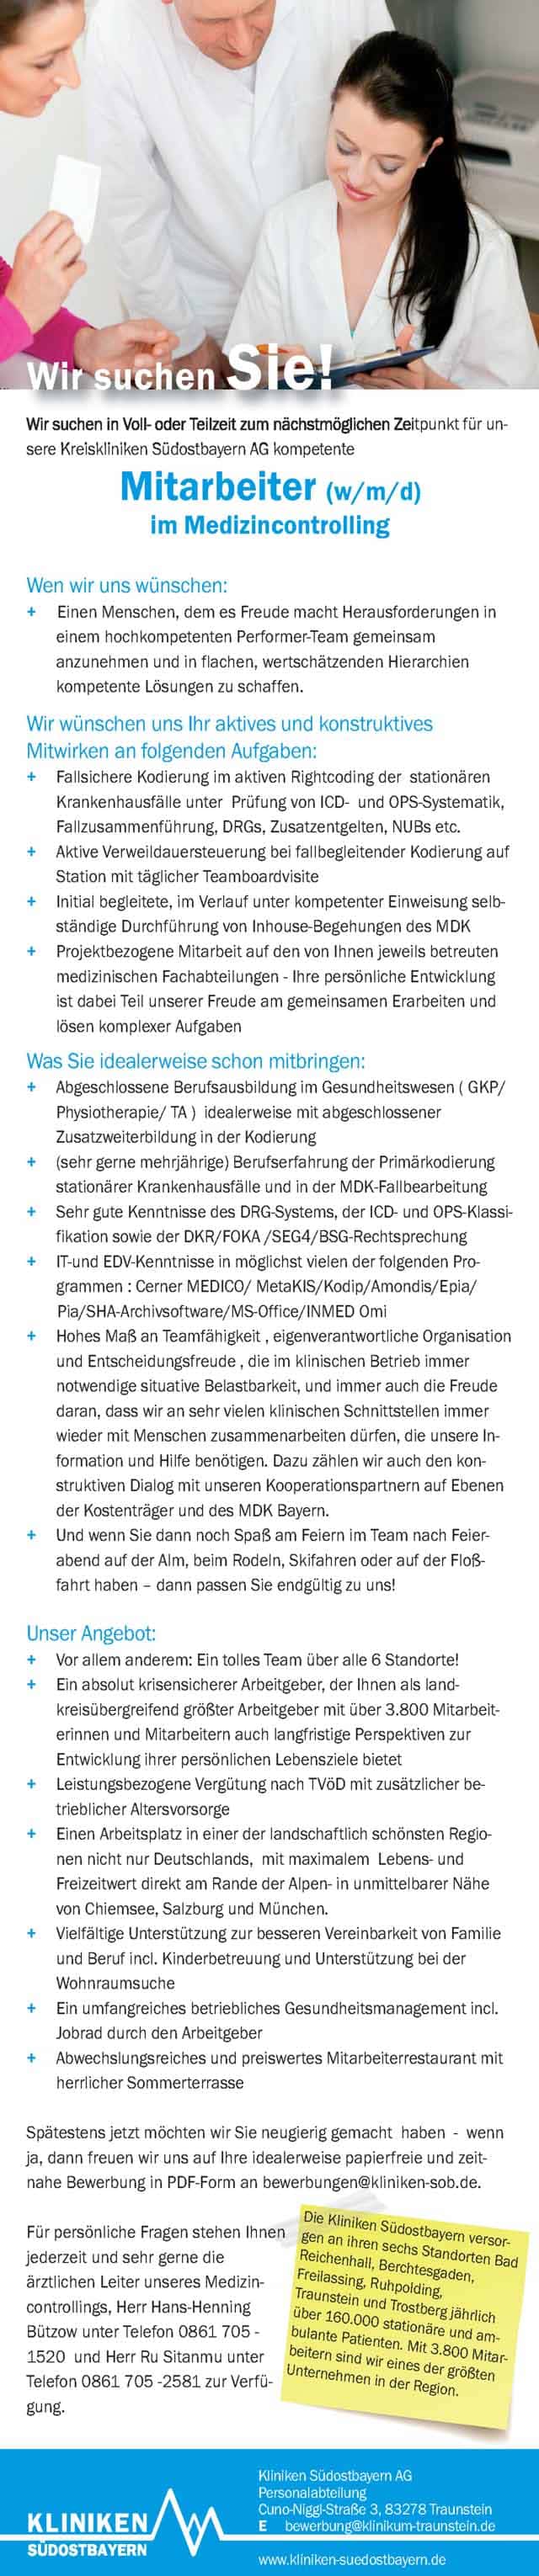 Kliniken Südostbayern AG: Mitarbeiter im Medizincontrolling (w/m/d)